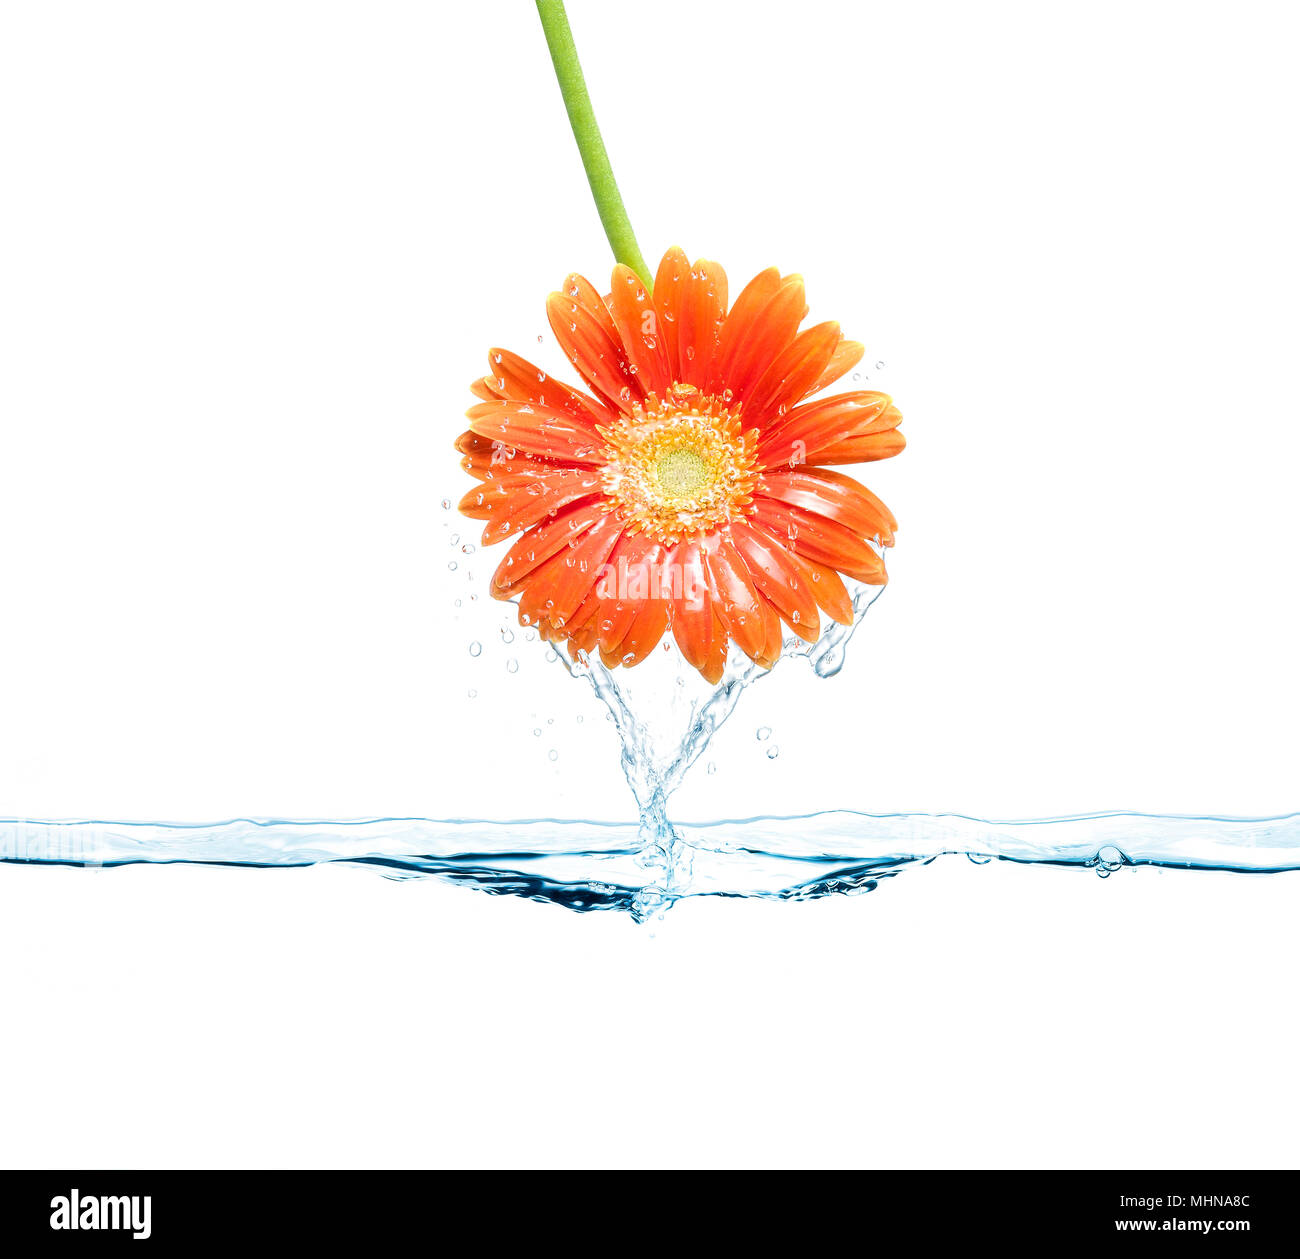 Daisy flower émergeant de la surface de l'eau. Le printemps et la fraîcheur du concept. Banque D'Images